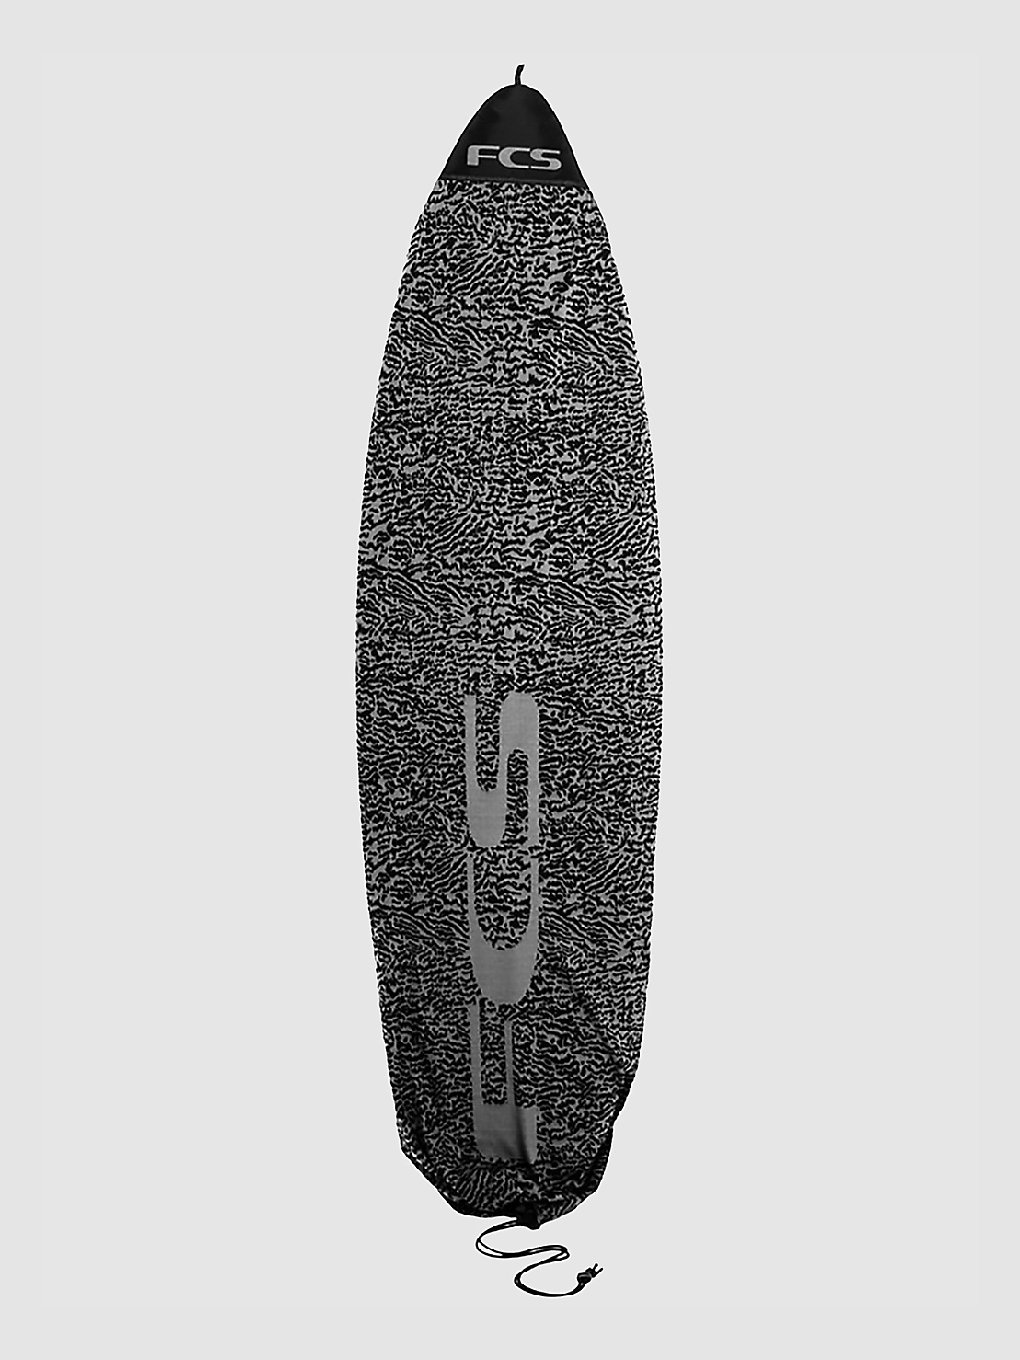 FCS Stretch Fun 6'7 Surfboard-Tasche carbon kaufen